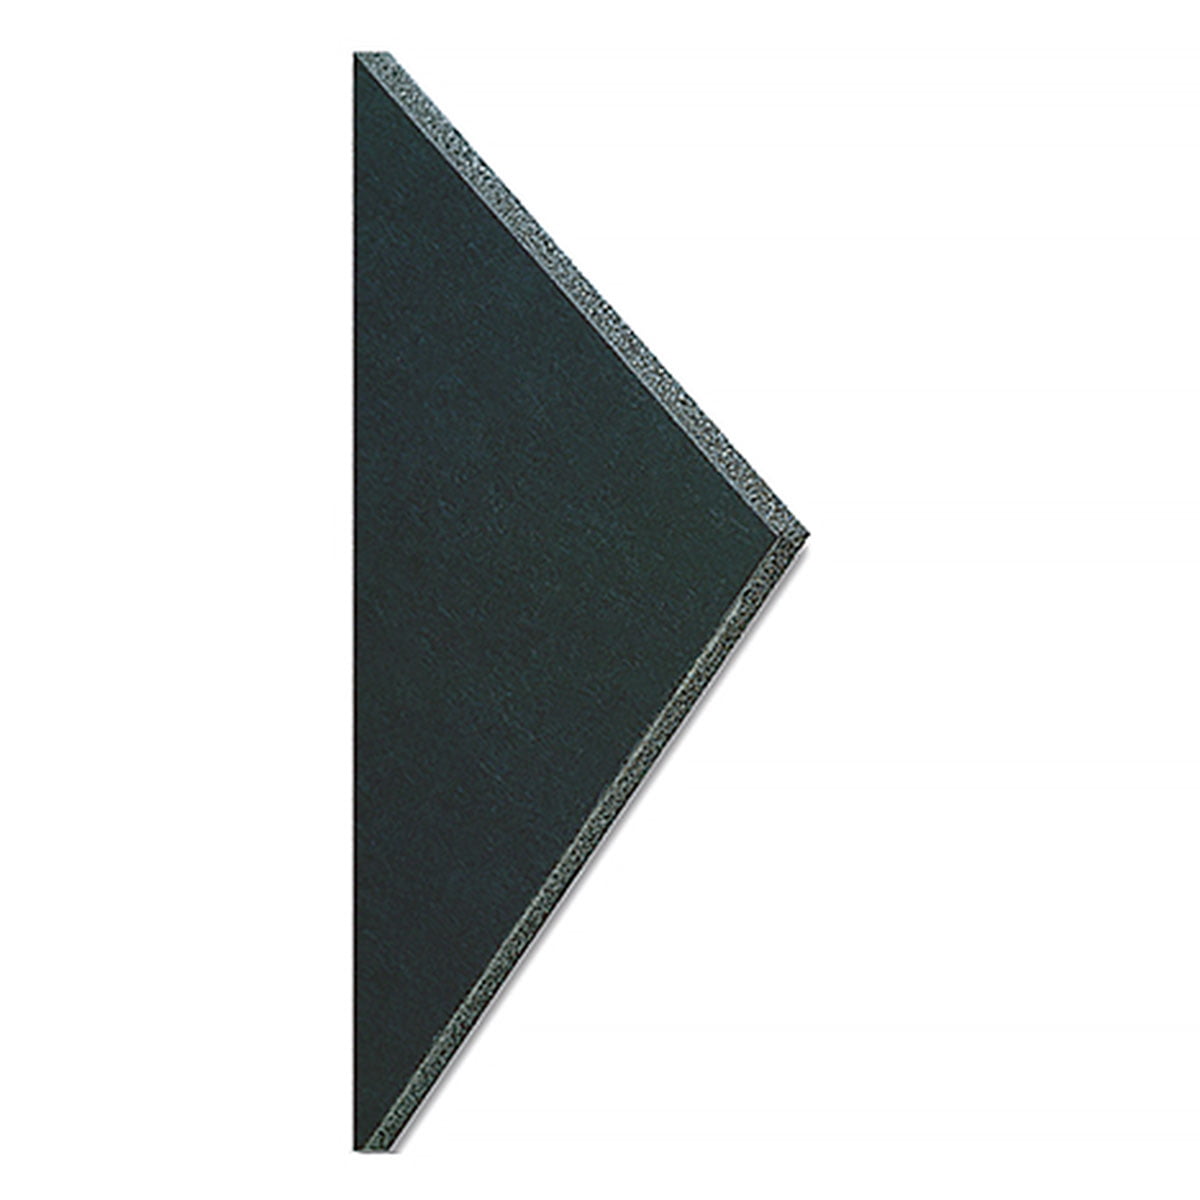 Black Foam Core Board 24 X 36 X 3/16 